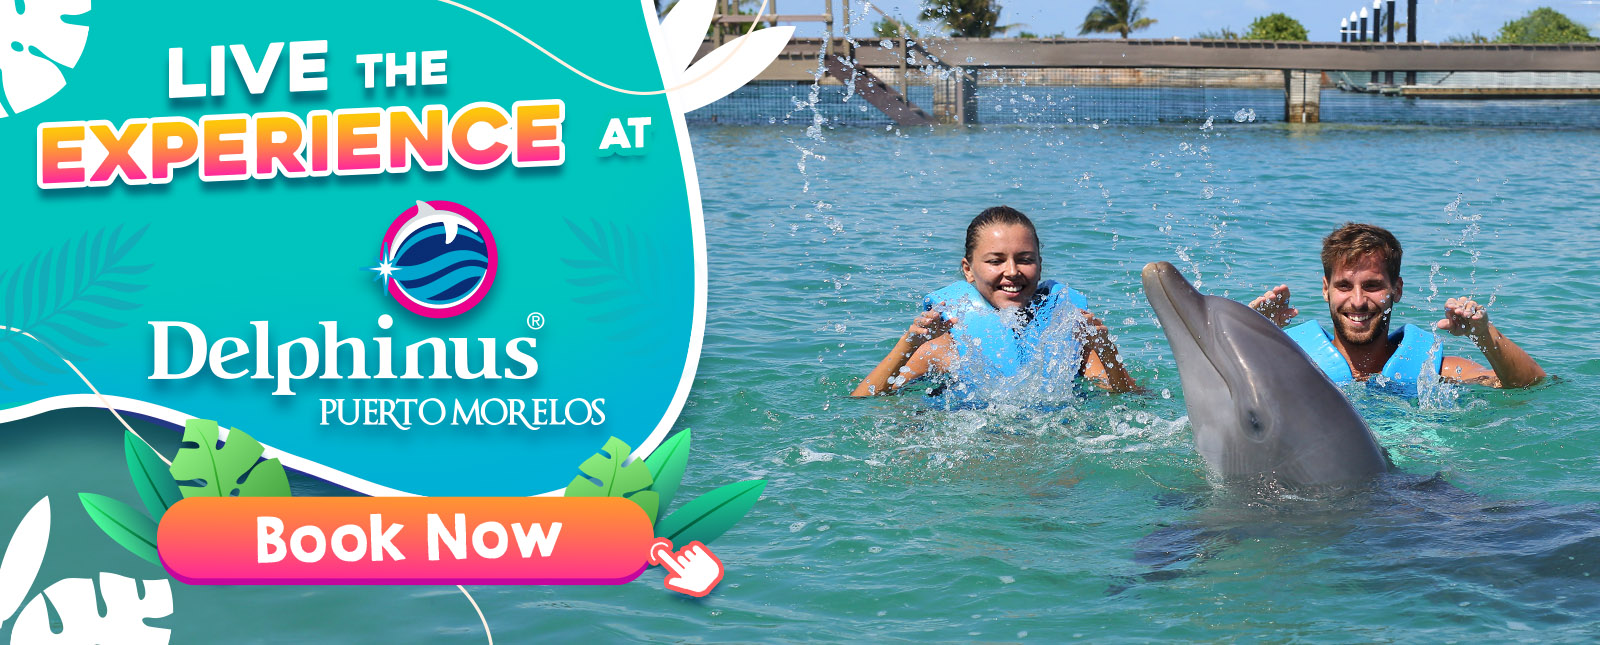 Swim with dolphins Delphinus Puerto Morelos